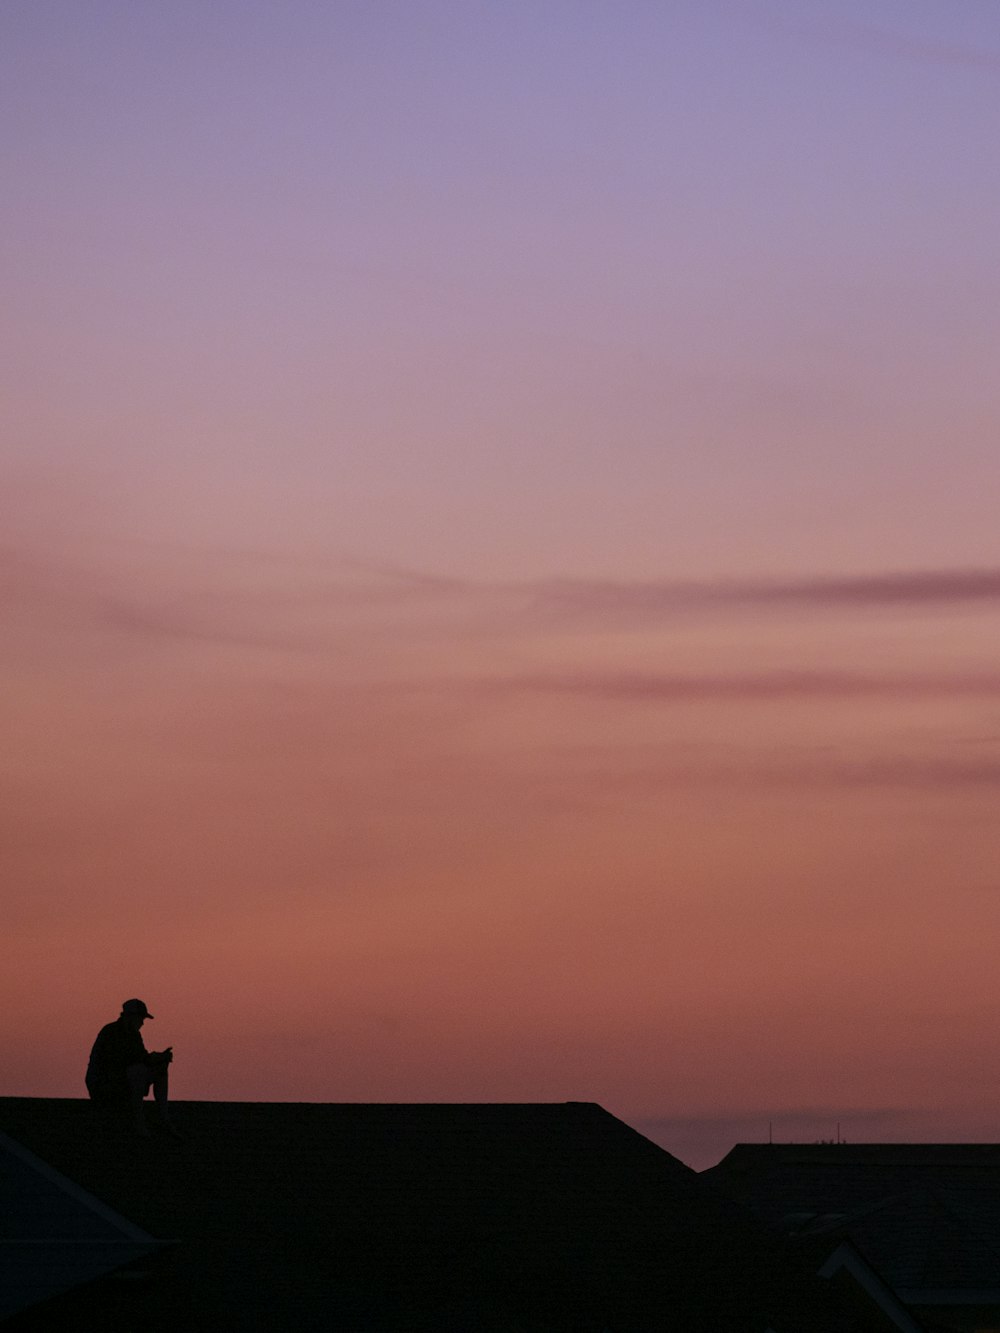 Un homme assis sur un toit à côté d’un cerf-volant